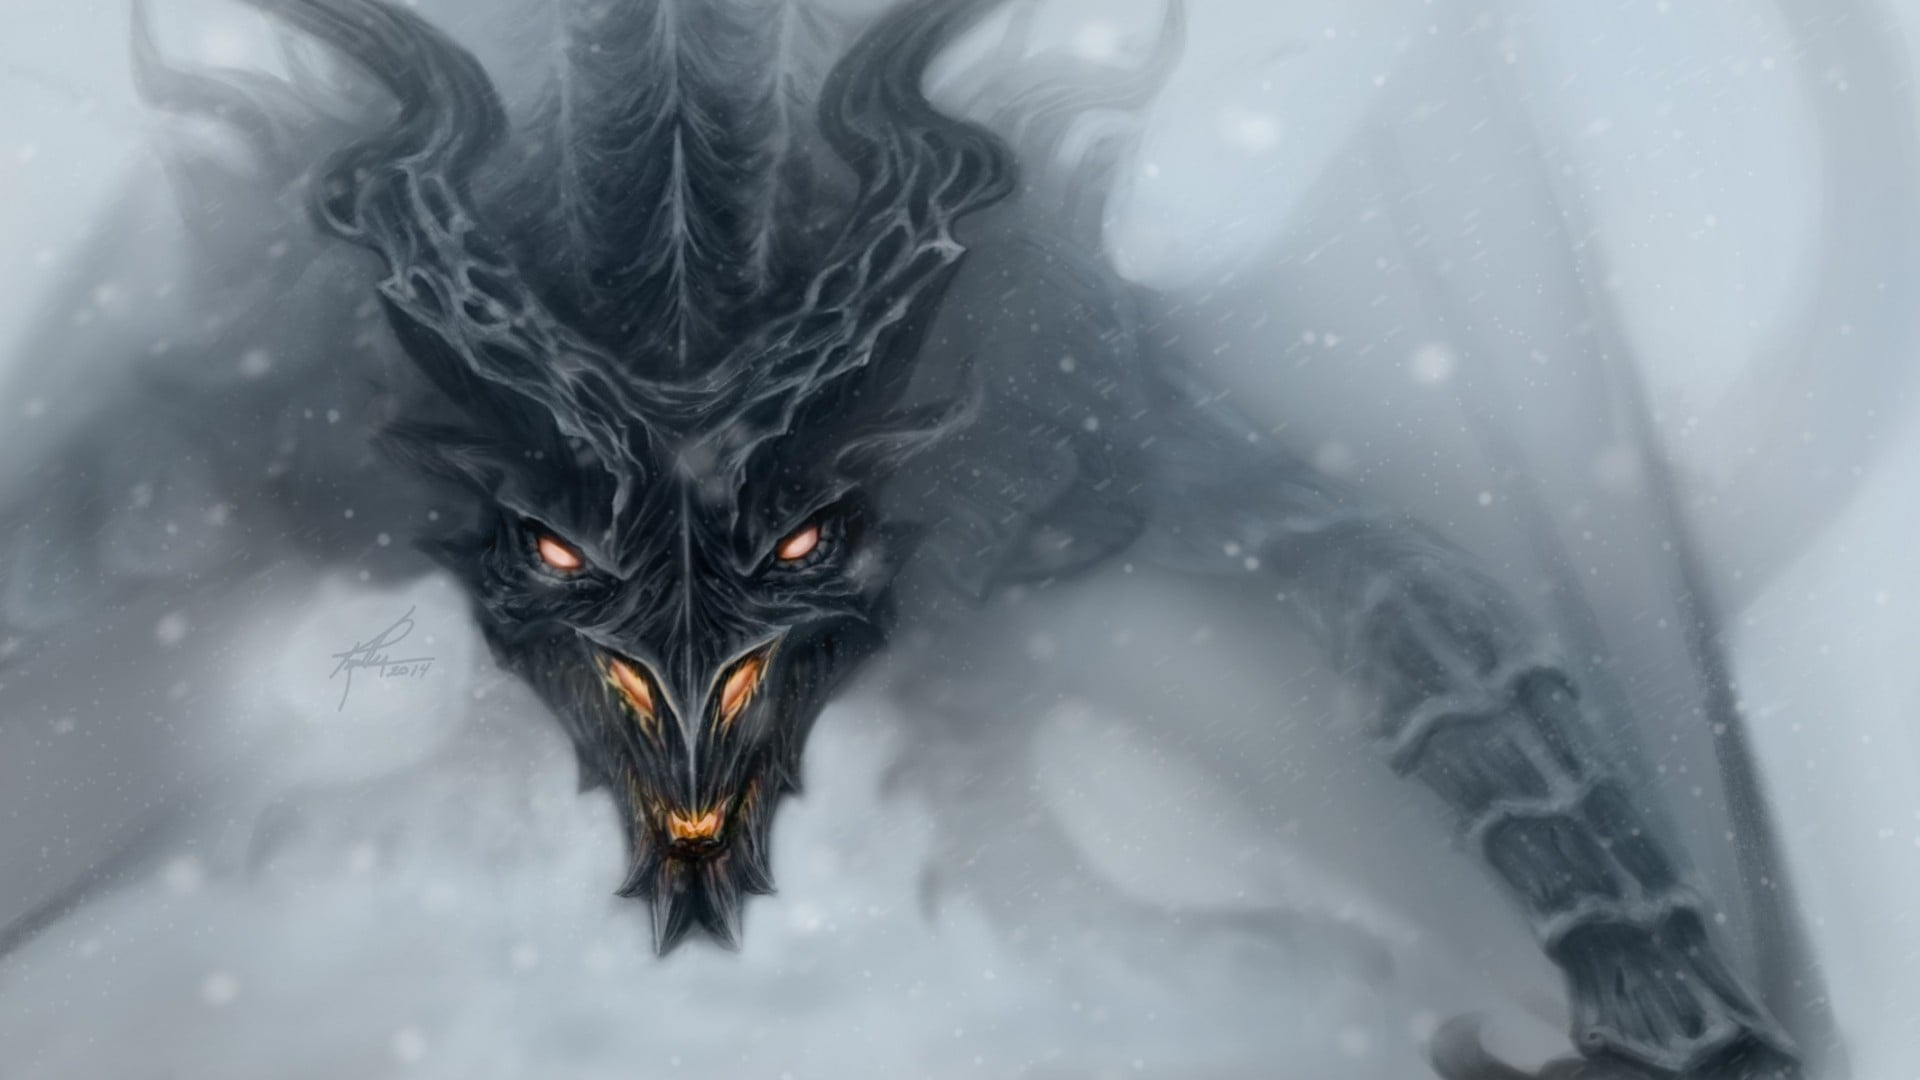 black dragon illustration, fantasy art, dragon, face, wings